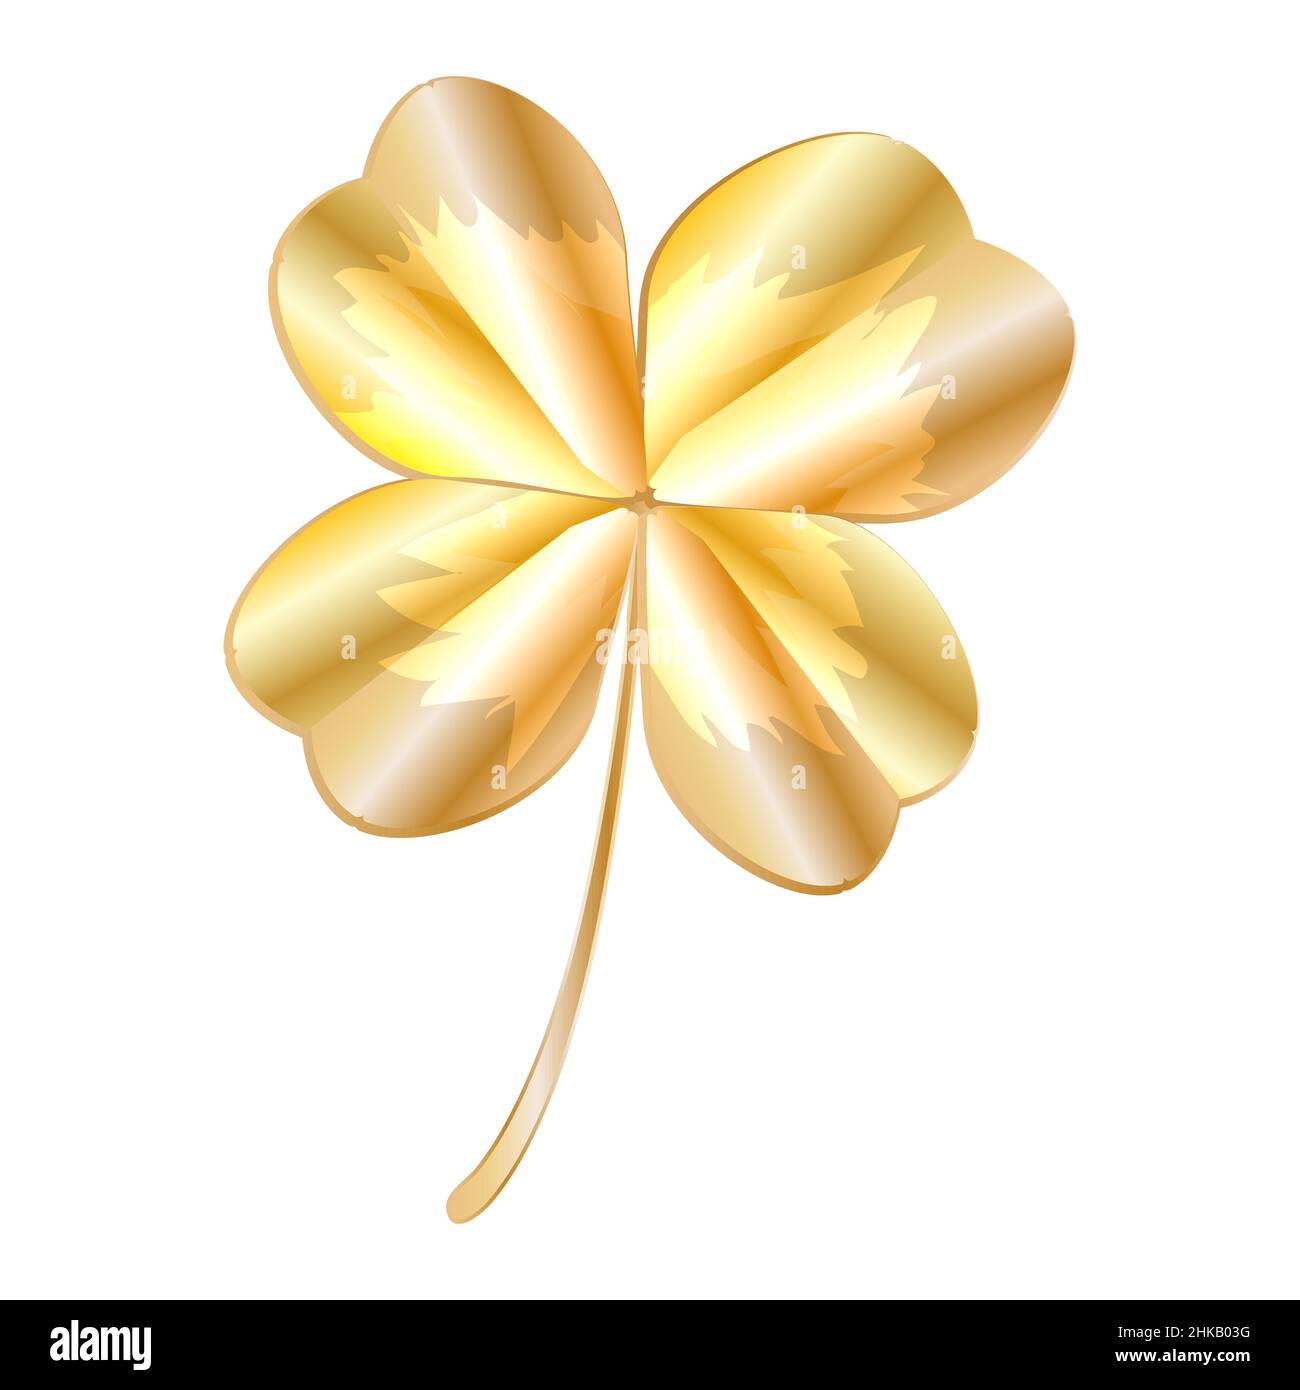 Goldenes Kleeblatt isoliert auf weißem Hintergrund. Dekorativer goldener, glücklicher Kleeblatt mit vier Blättern. Goldschamrock Symbol.Heilige Patricks Tag Symbol oder Zeichen.Vektor Stock Vektor